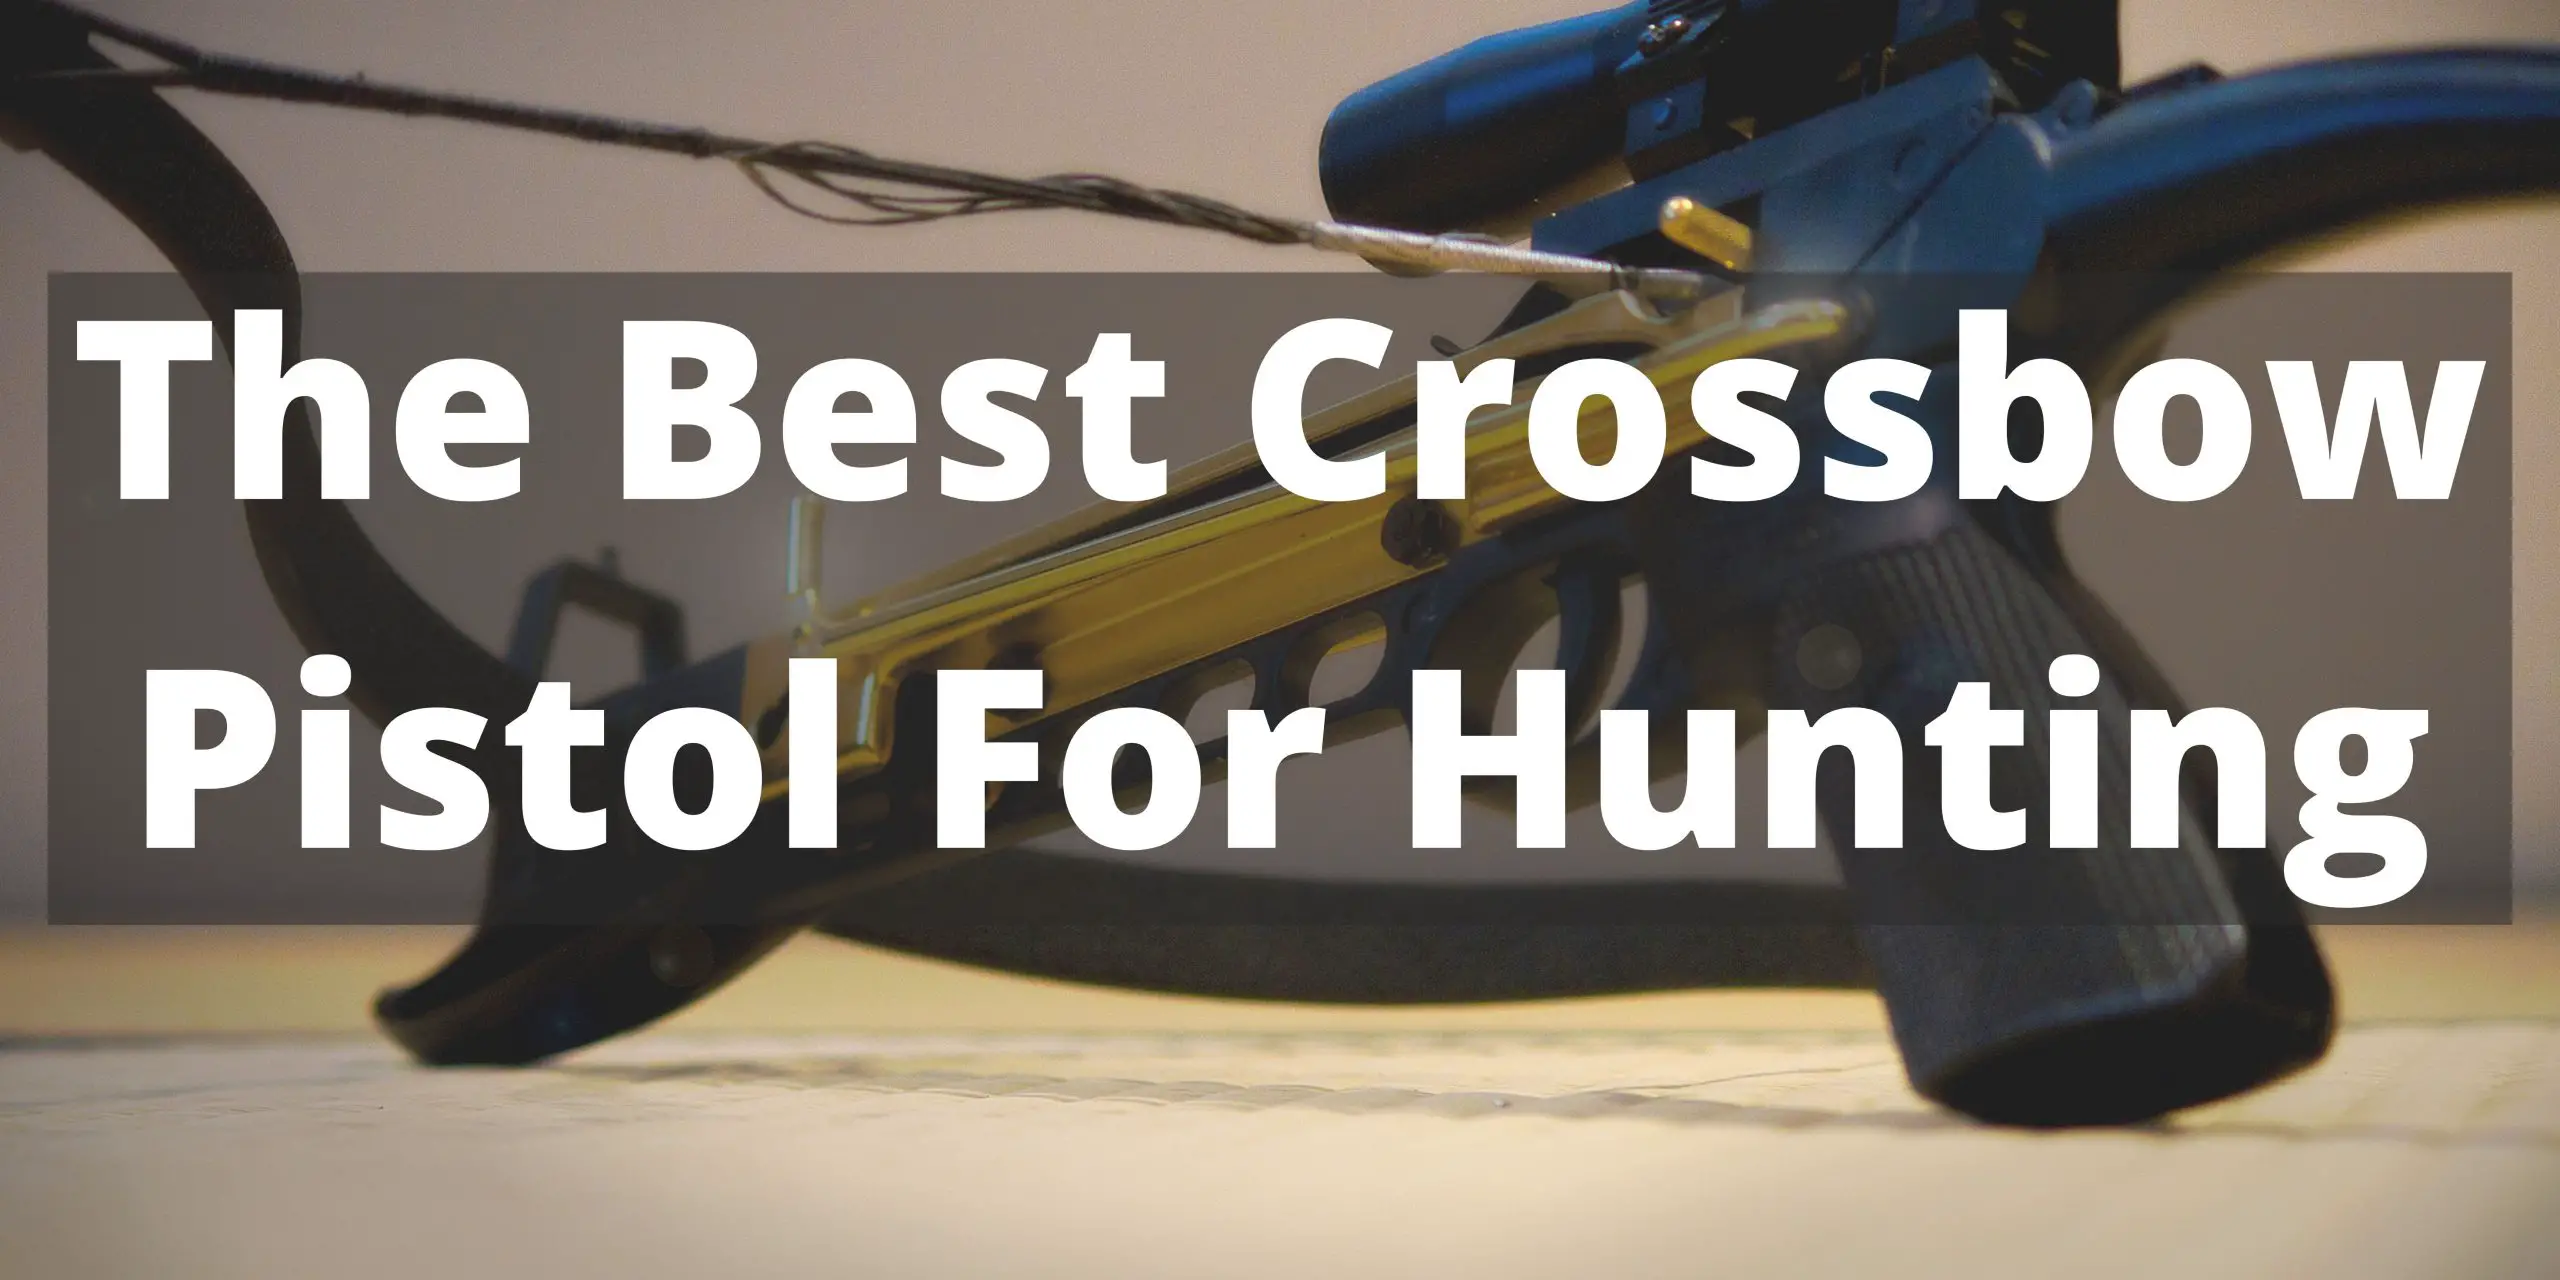 Best Crossbow Pistol For Hunting